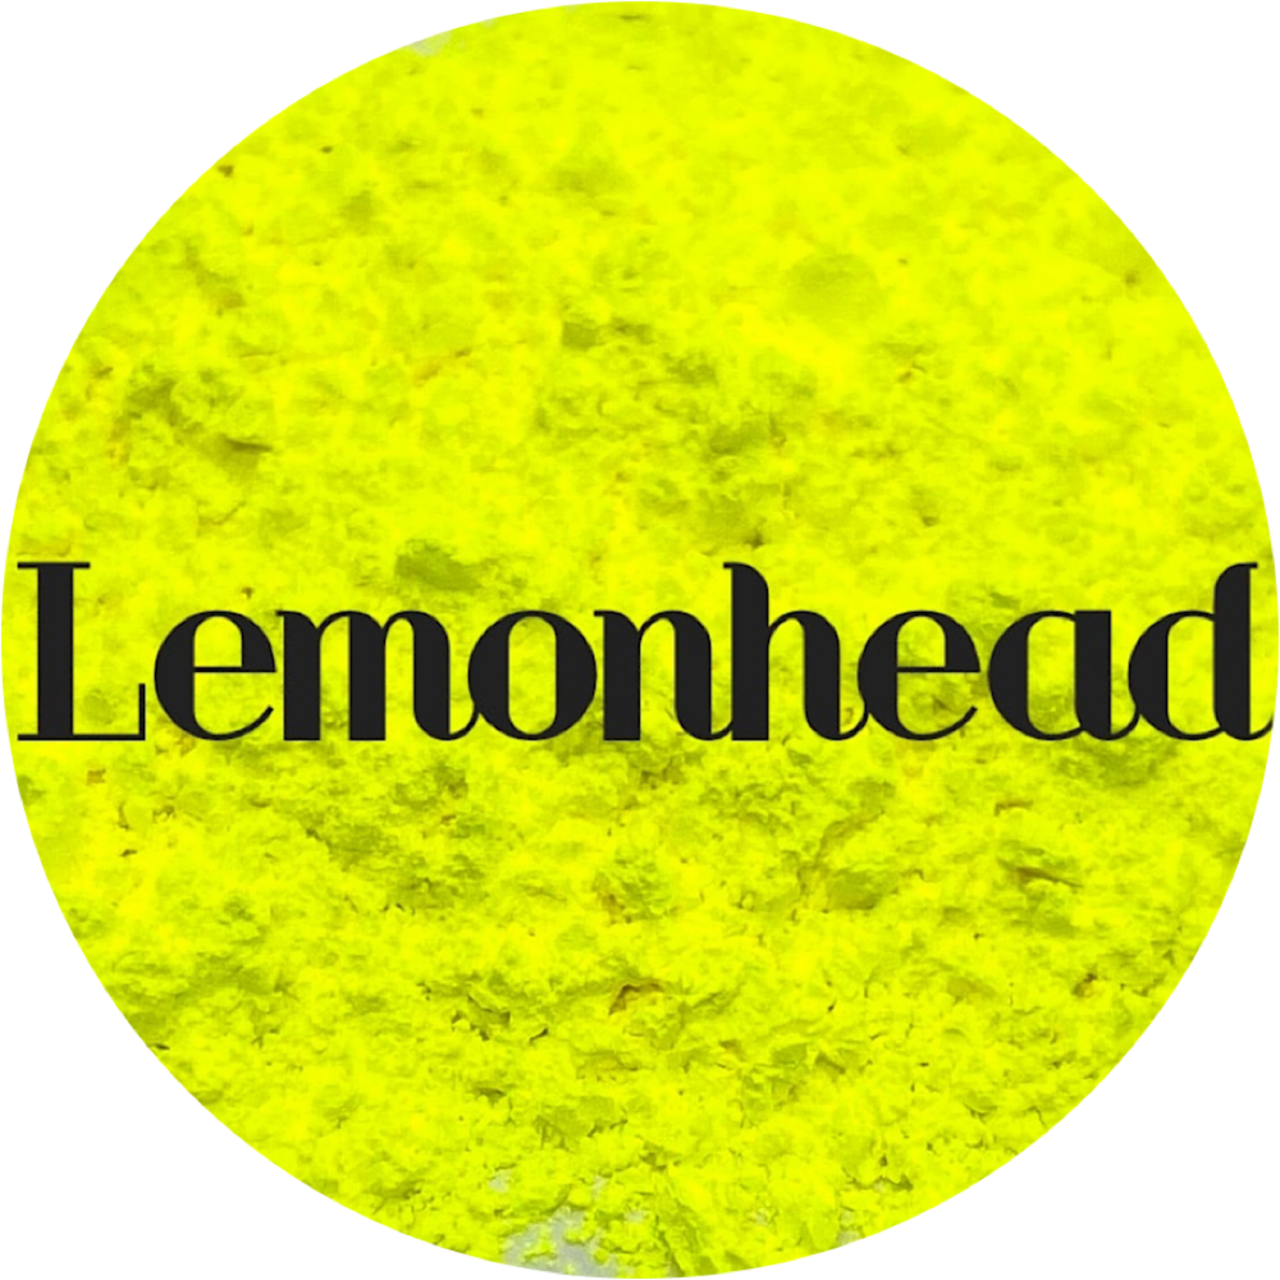 Lemonhead Neon Mica Powder by Glitter Heart Co.™